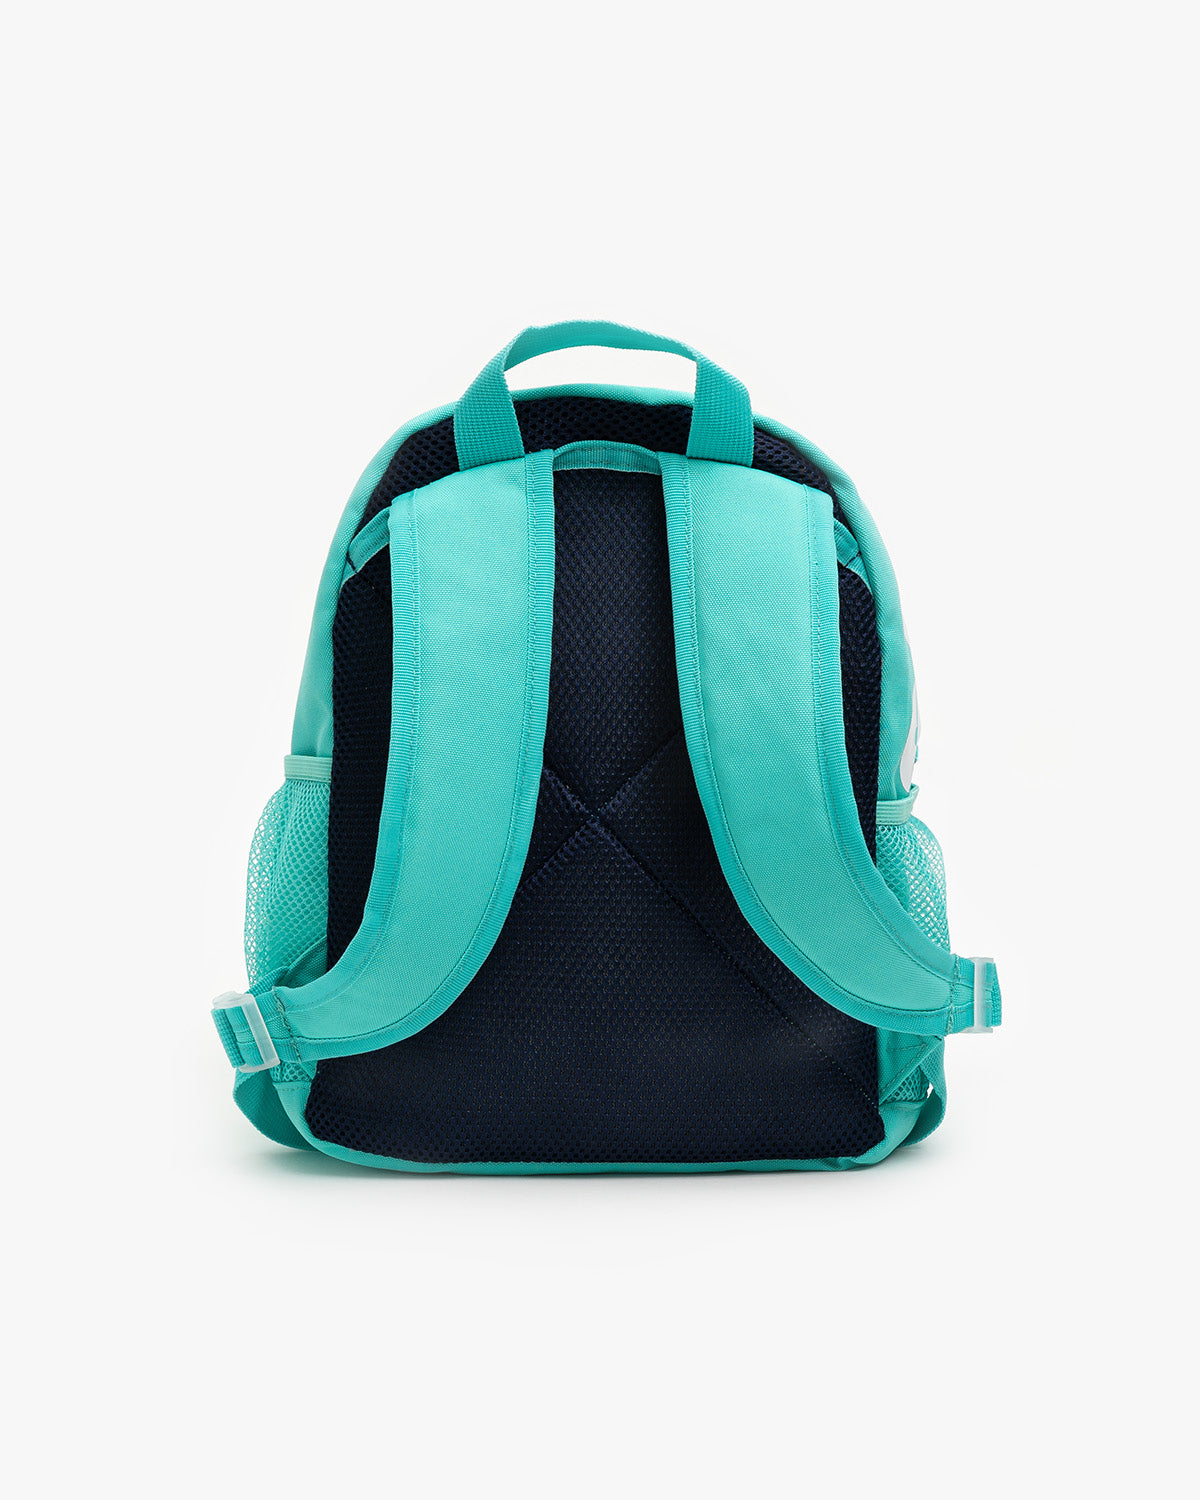 Swim Backpack - Aqua